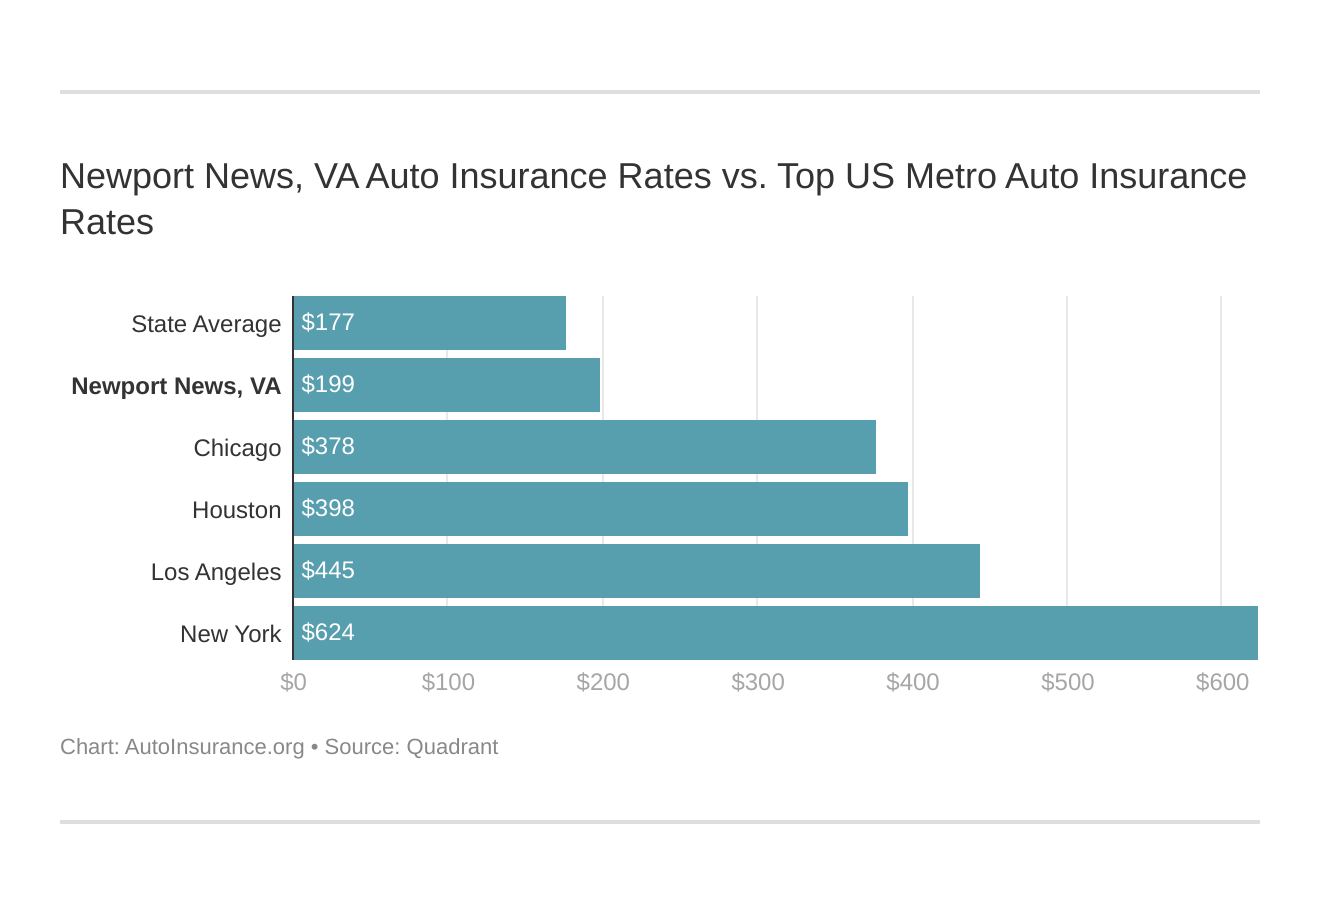 Newport News, VA Auto Insurance Rates vs. Top US Metro Auto Insurance Rates